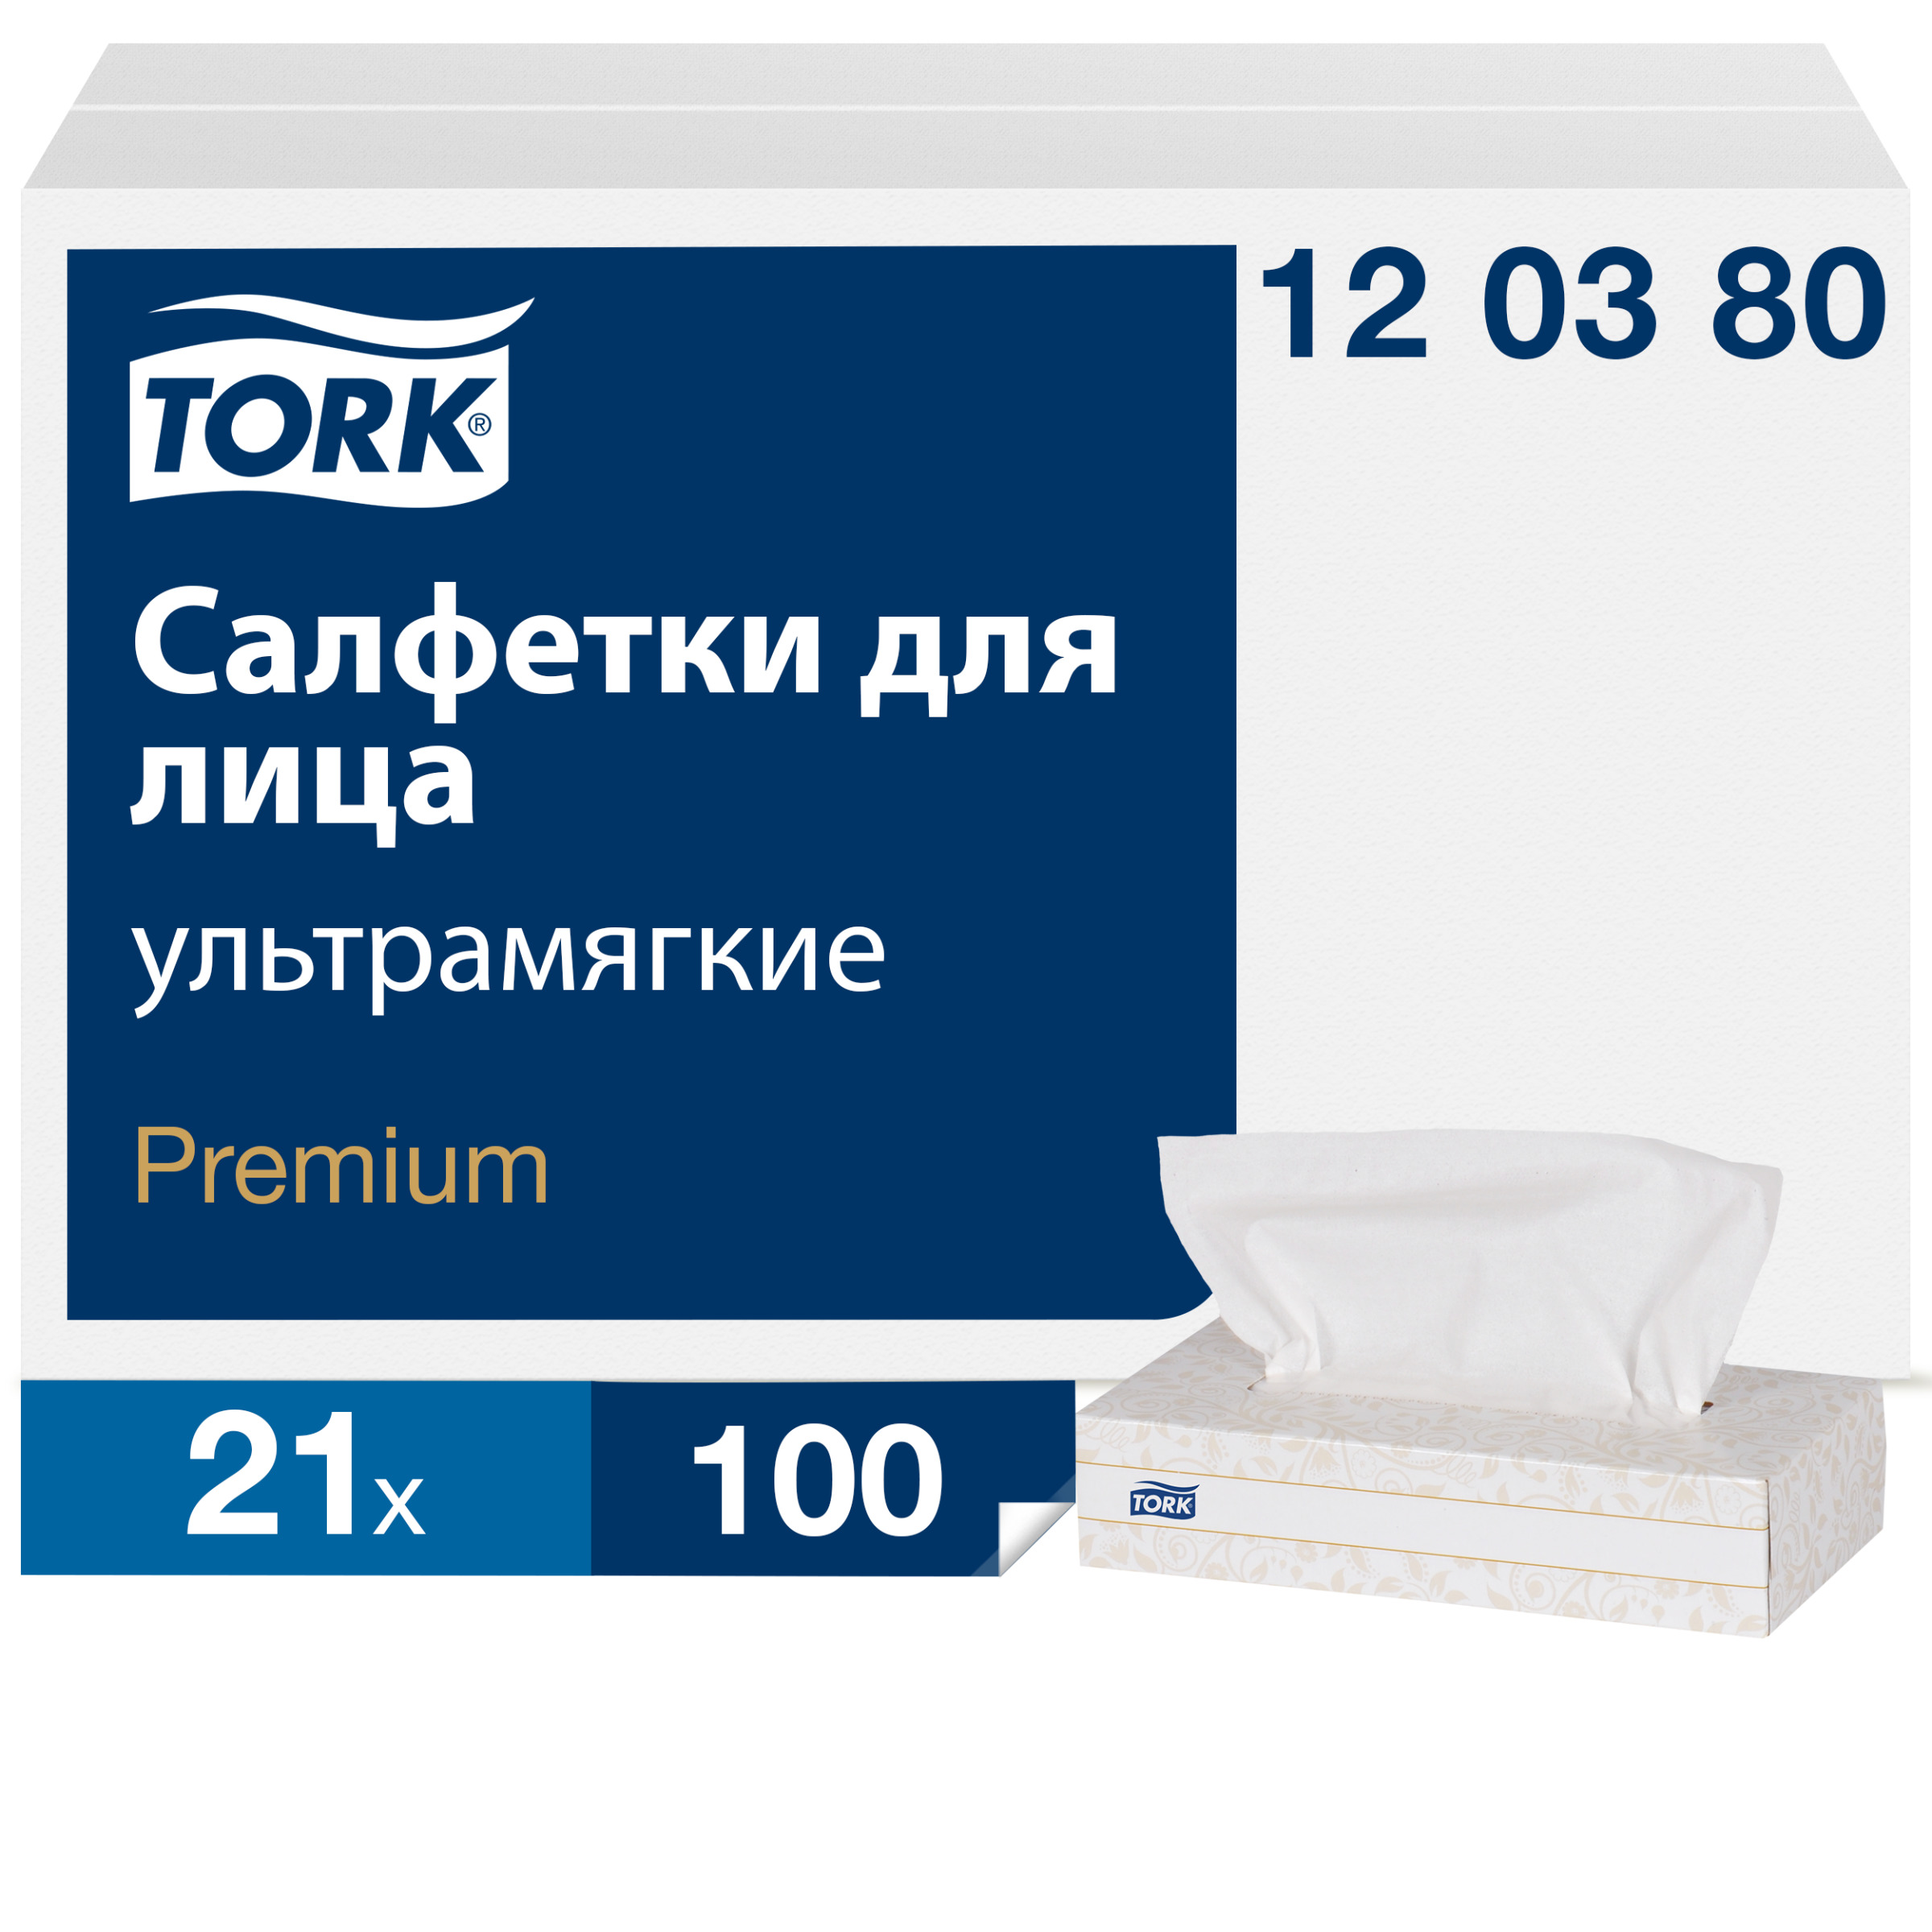 Салфетки Tork Premium для лица 2 слоя 100 листов ультрамягкие